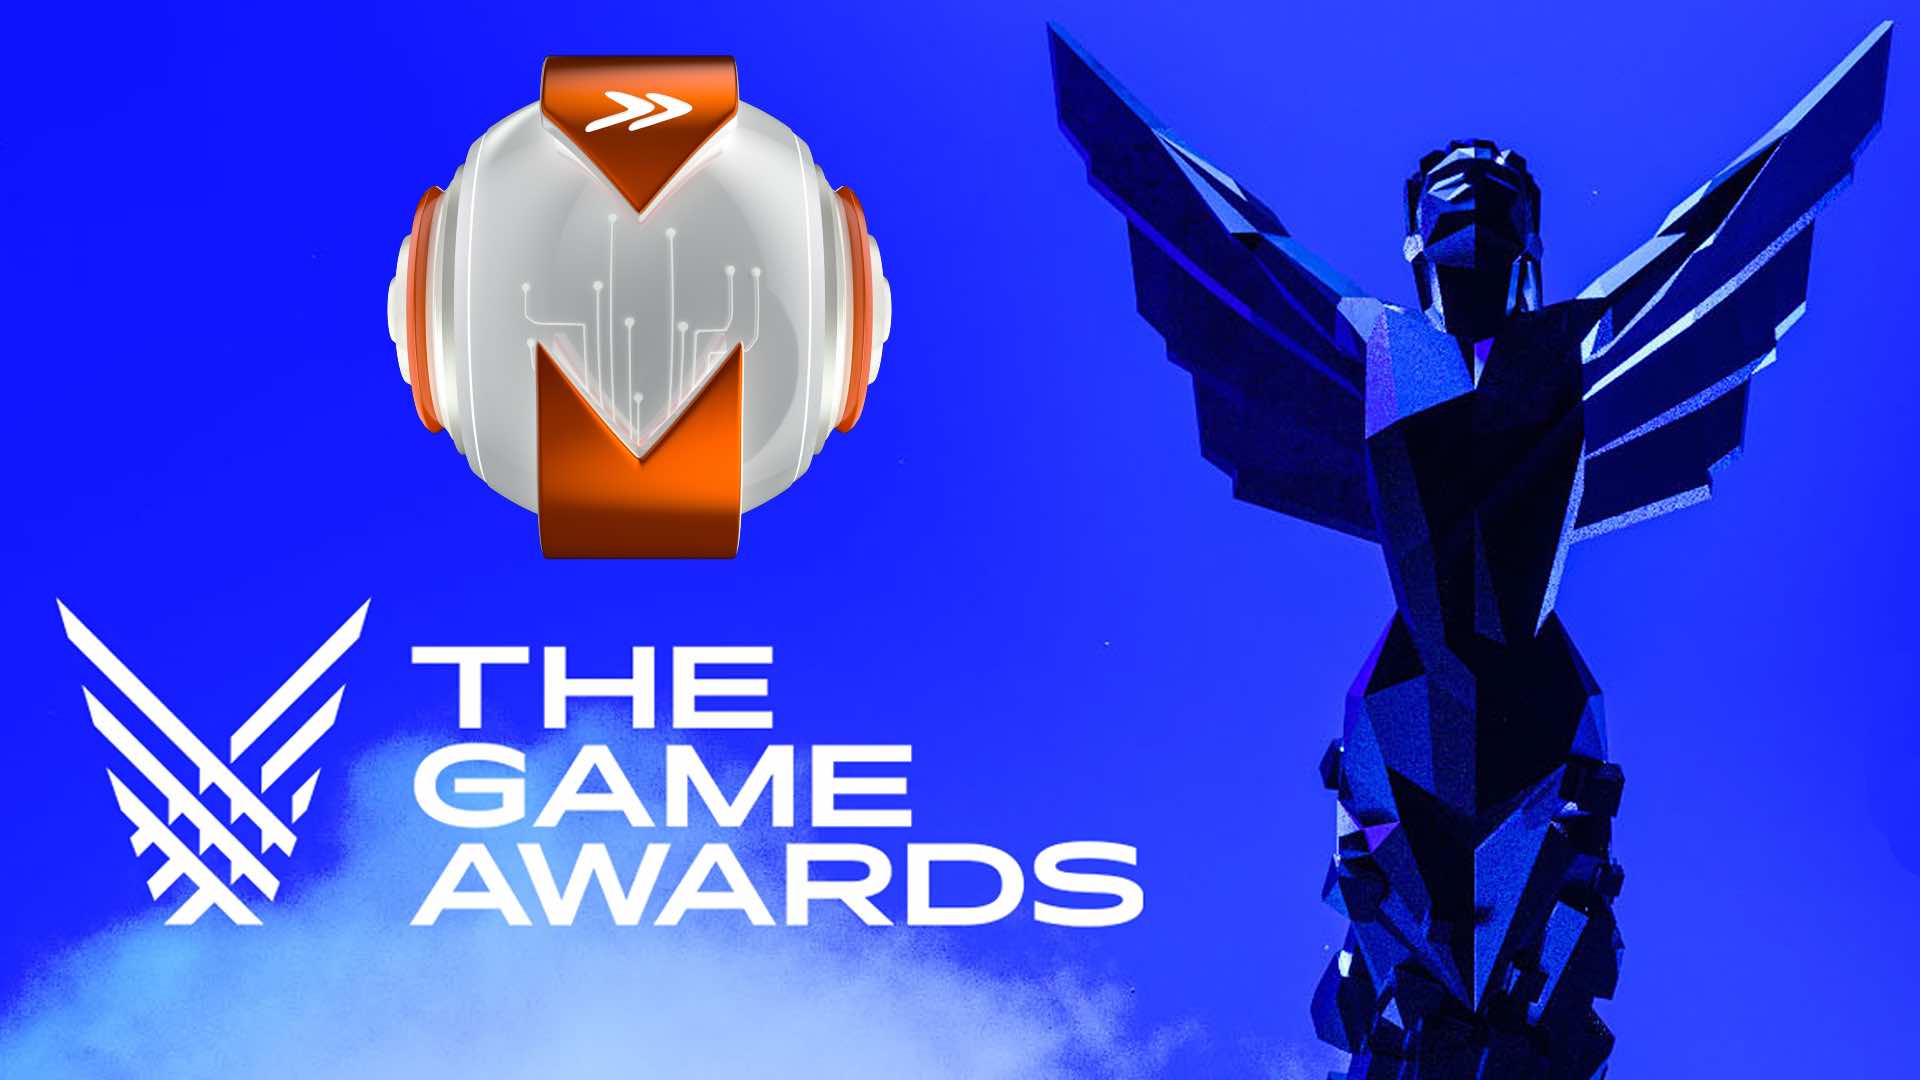 As apostas do Voxel para o The Game Awards 2022!